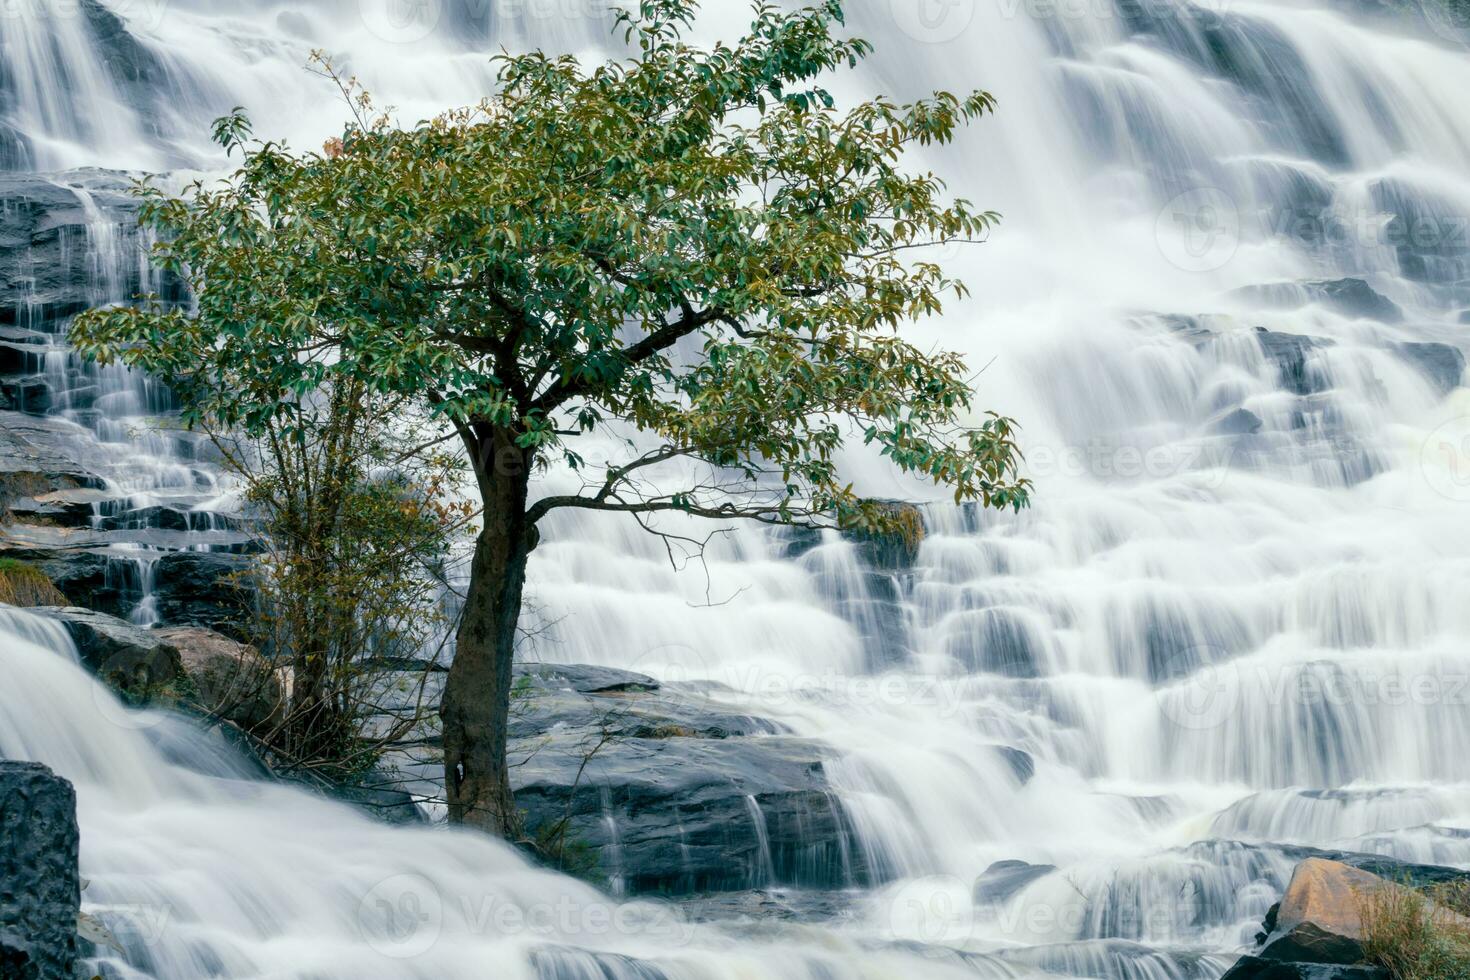 hermosa cascada en lozano tropical verde bosque. naturaleza paisaje. mae ya cascada es situado en doi Inthanon nacional parque, chiang Mai, tailandia cascada fluye mediante selva en ladera de la montaña foto